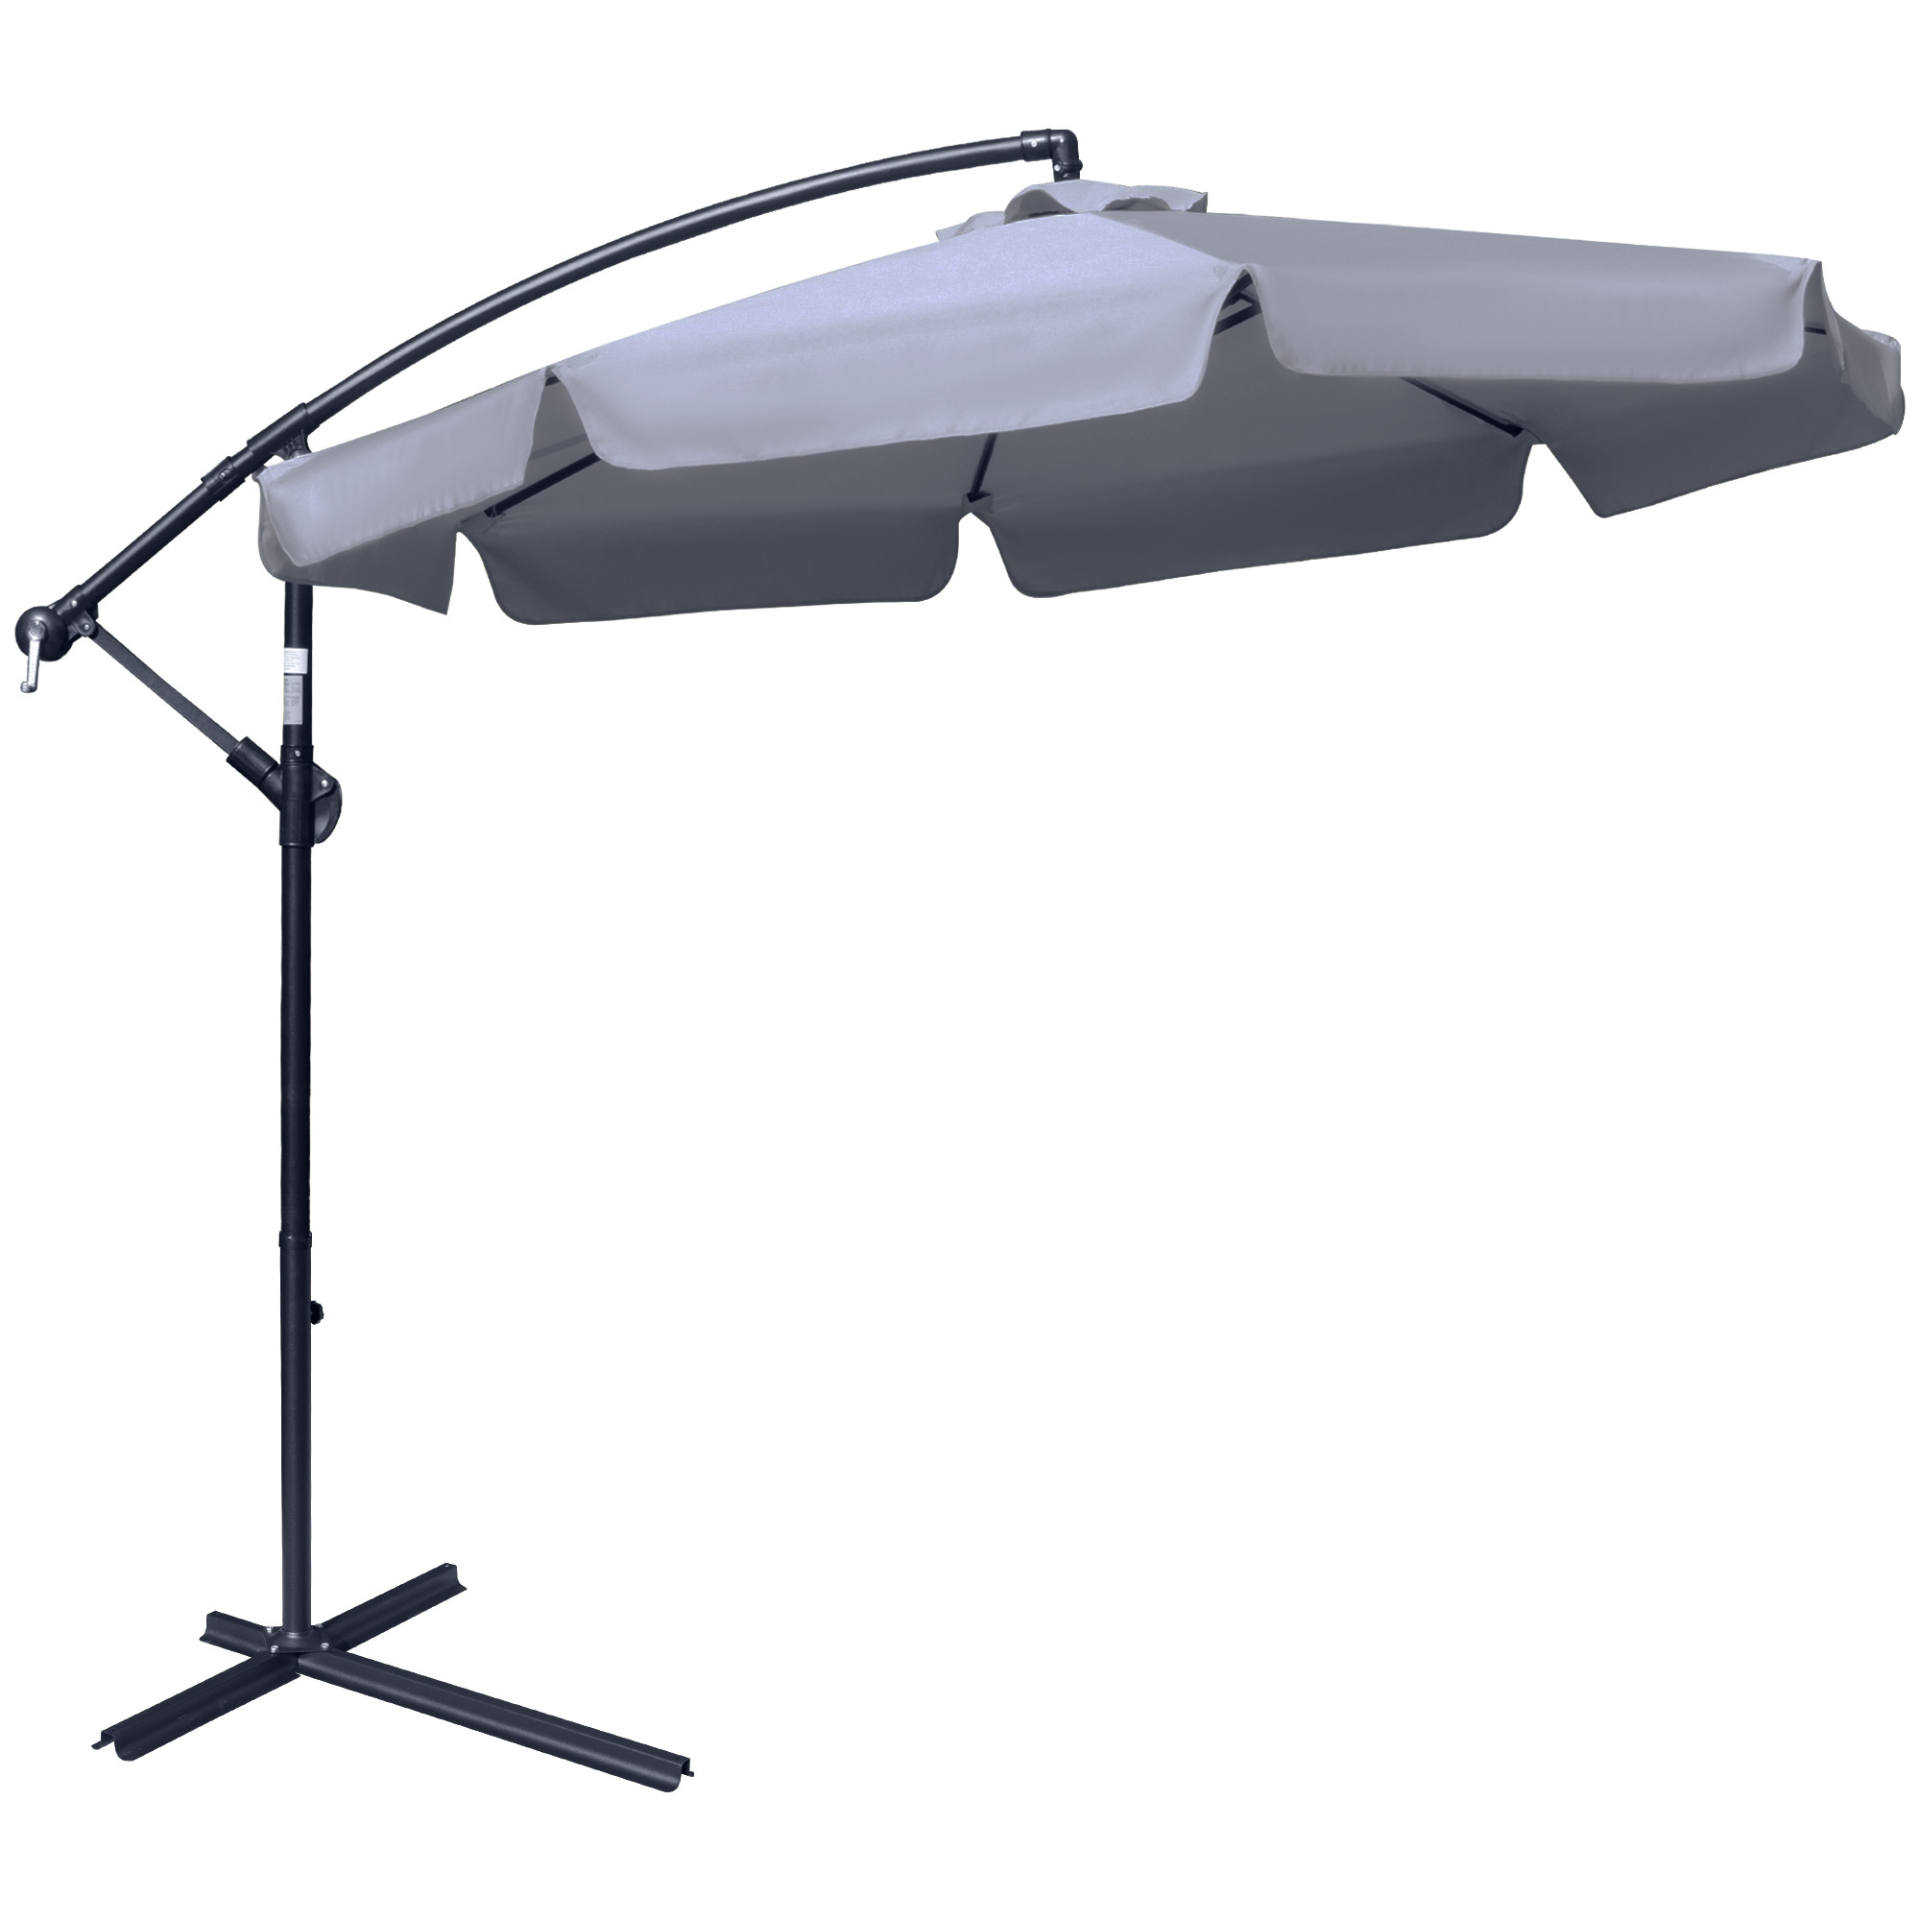 Outsunny 2.7m Garden Banana Parasol Cantilever Umbrella with Crank Handle and Cross Base for Outdoor, Hanging Sun Shade, Dark Grey